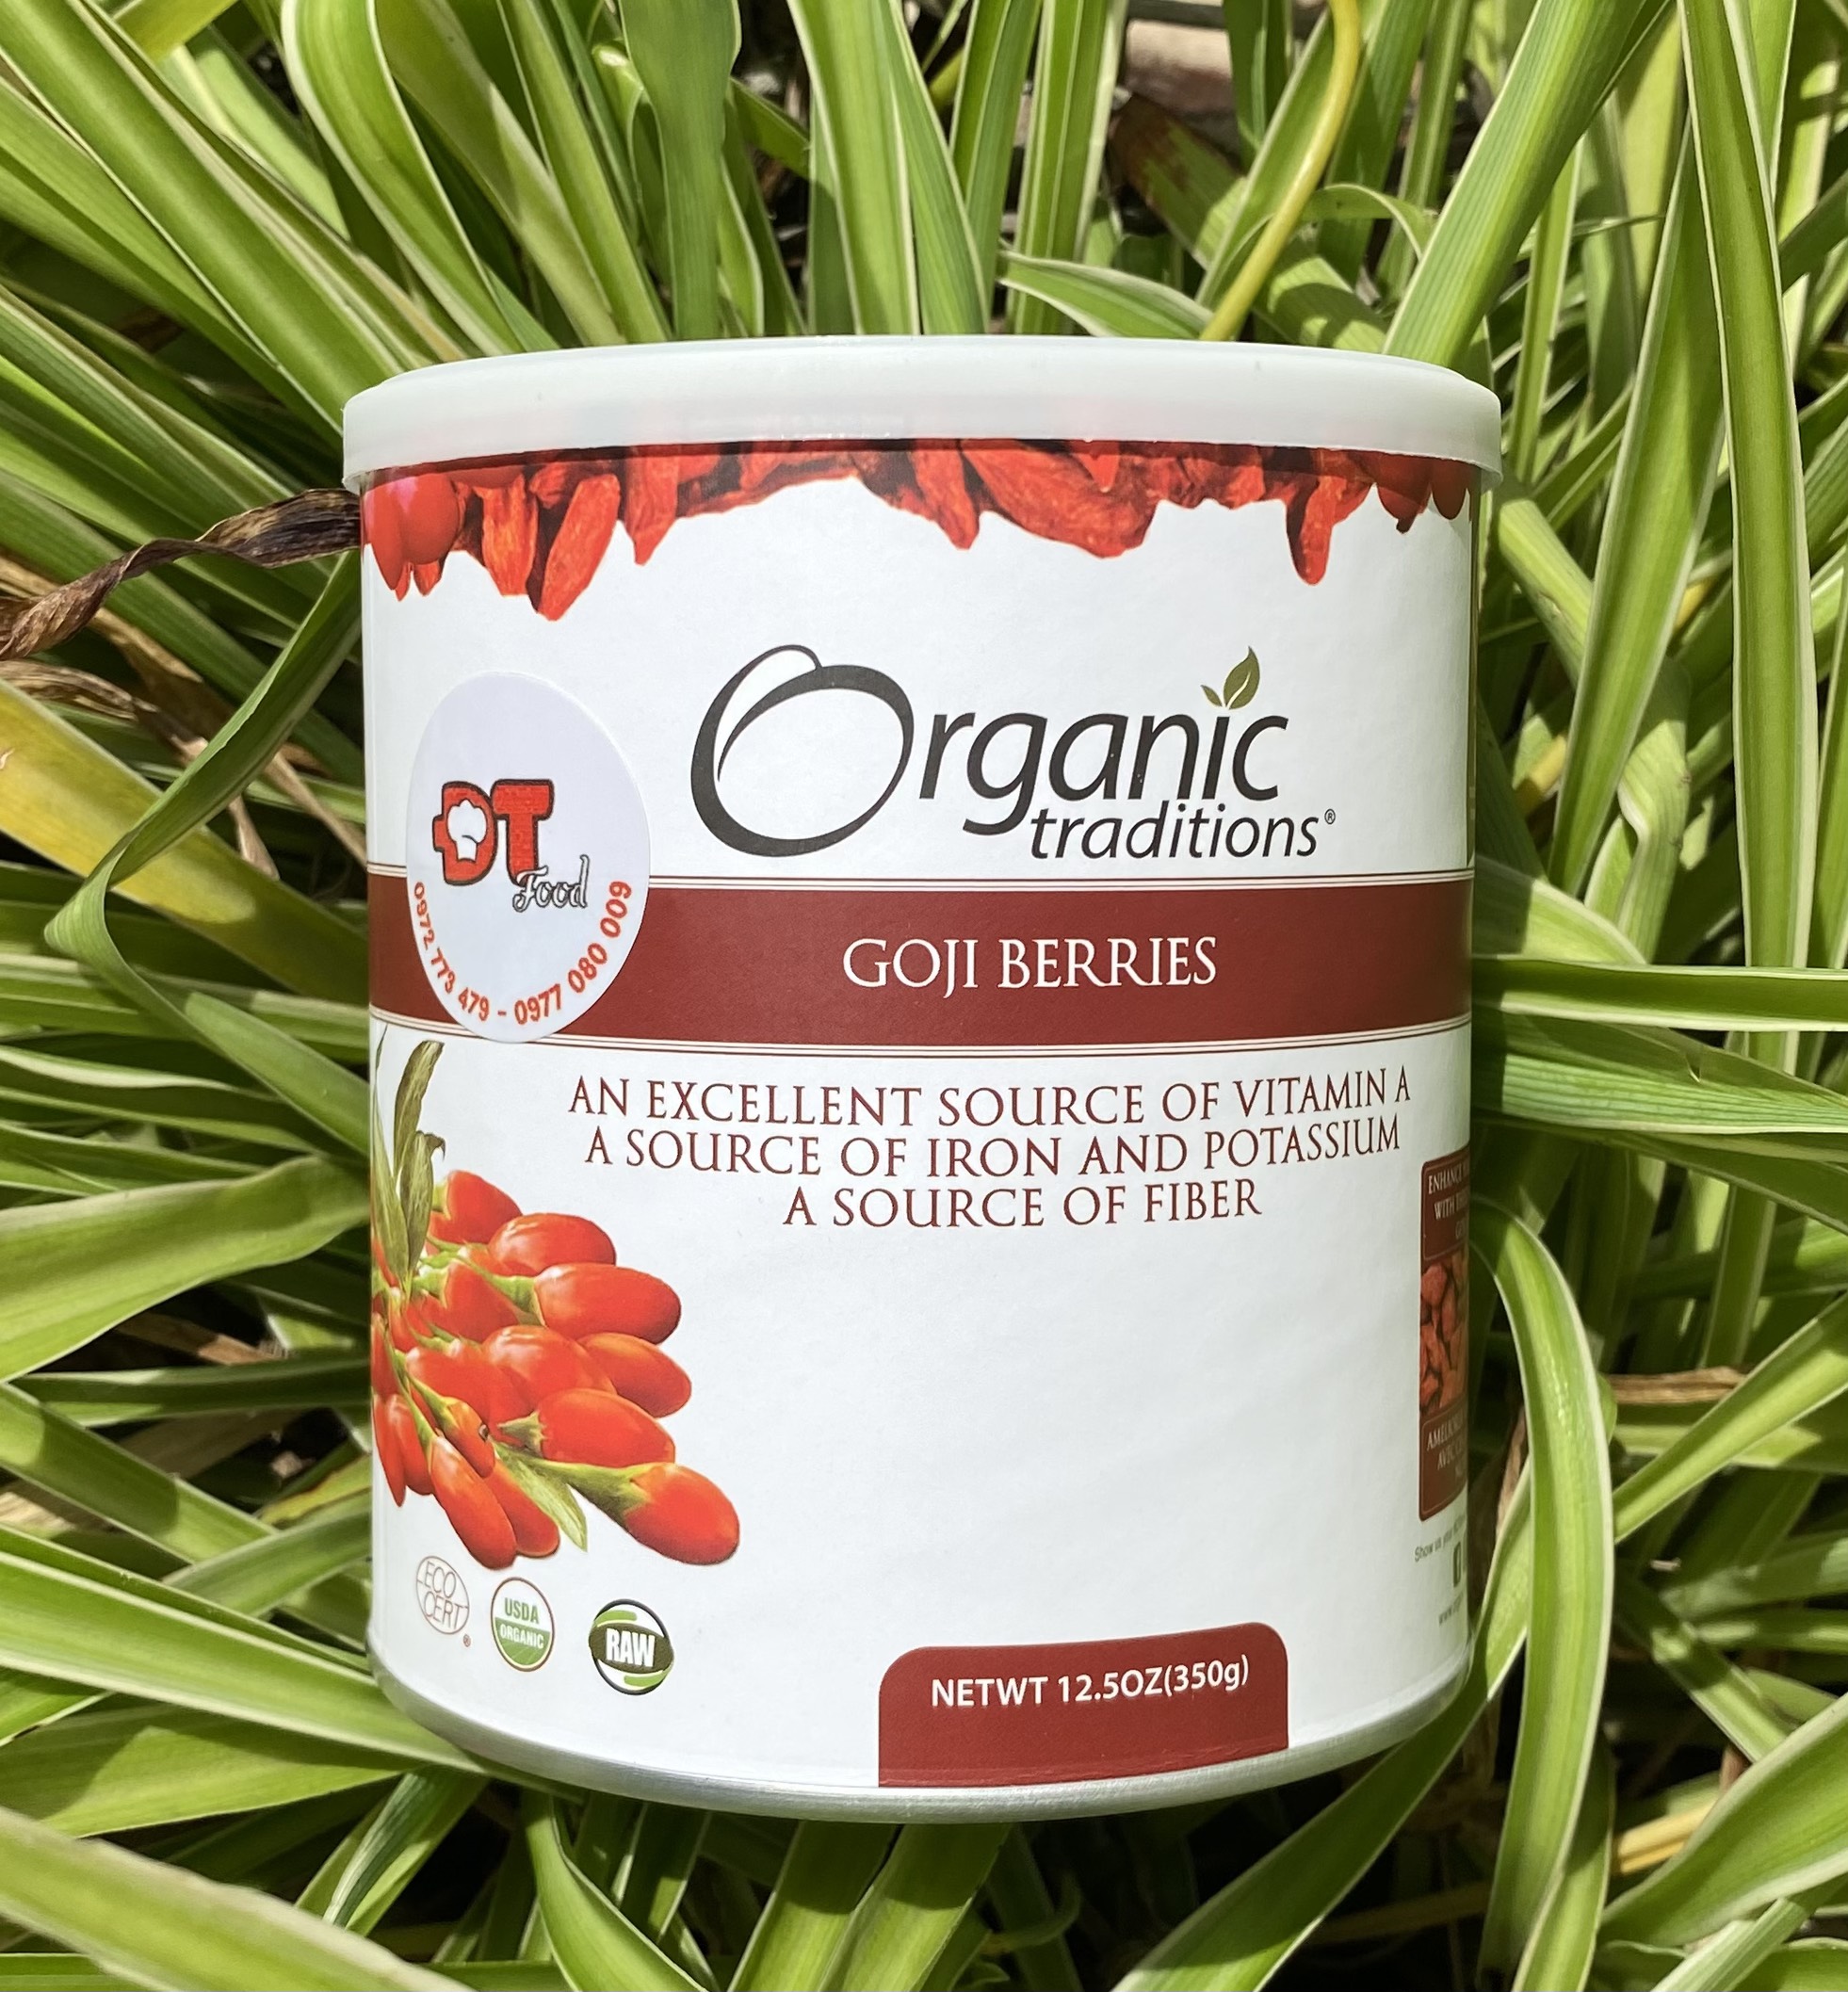 Kỷ tử đỏ | kỷ tử đen hữu cơ sấy khô Goji Berries Organic Traditions nhập khẩu Mỹ